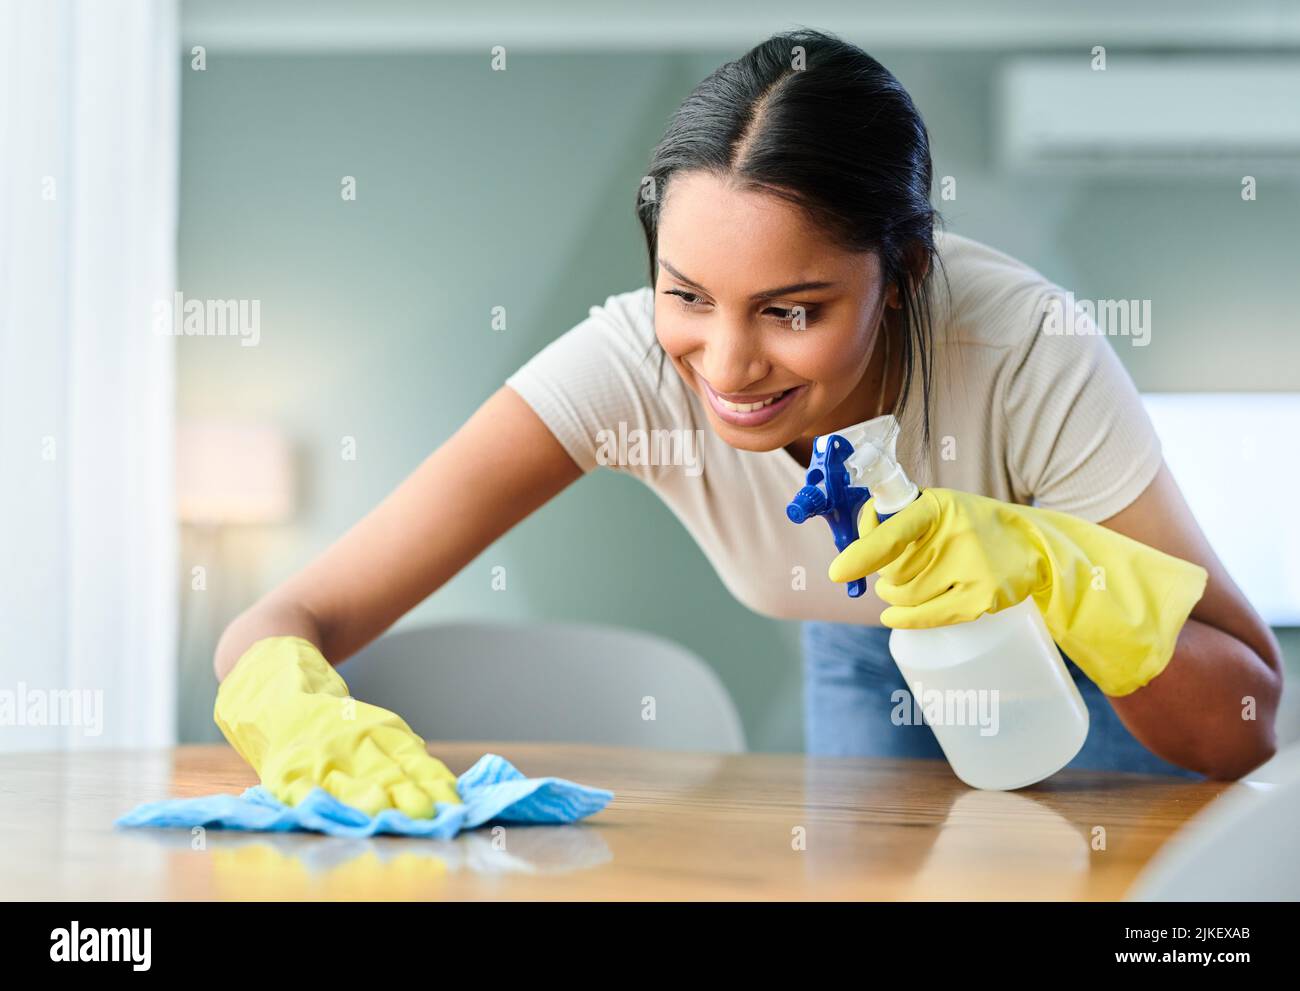 Una mujer joven limpia una superficie en casa. Foto de stock